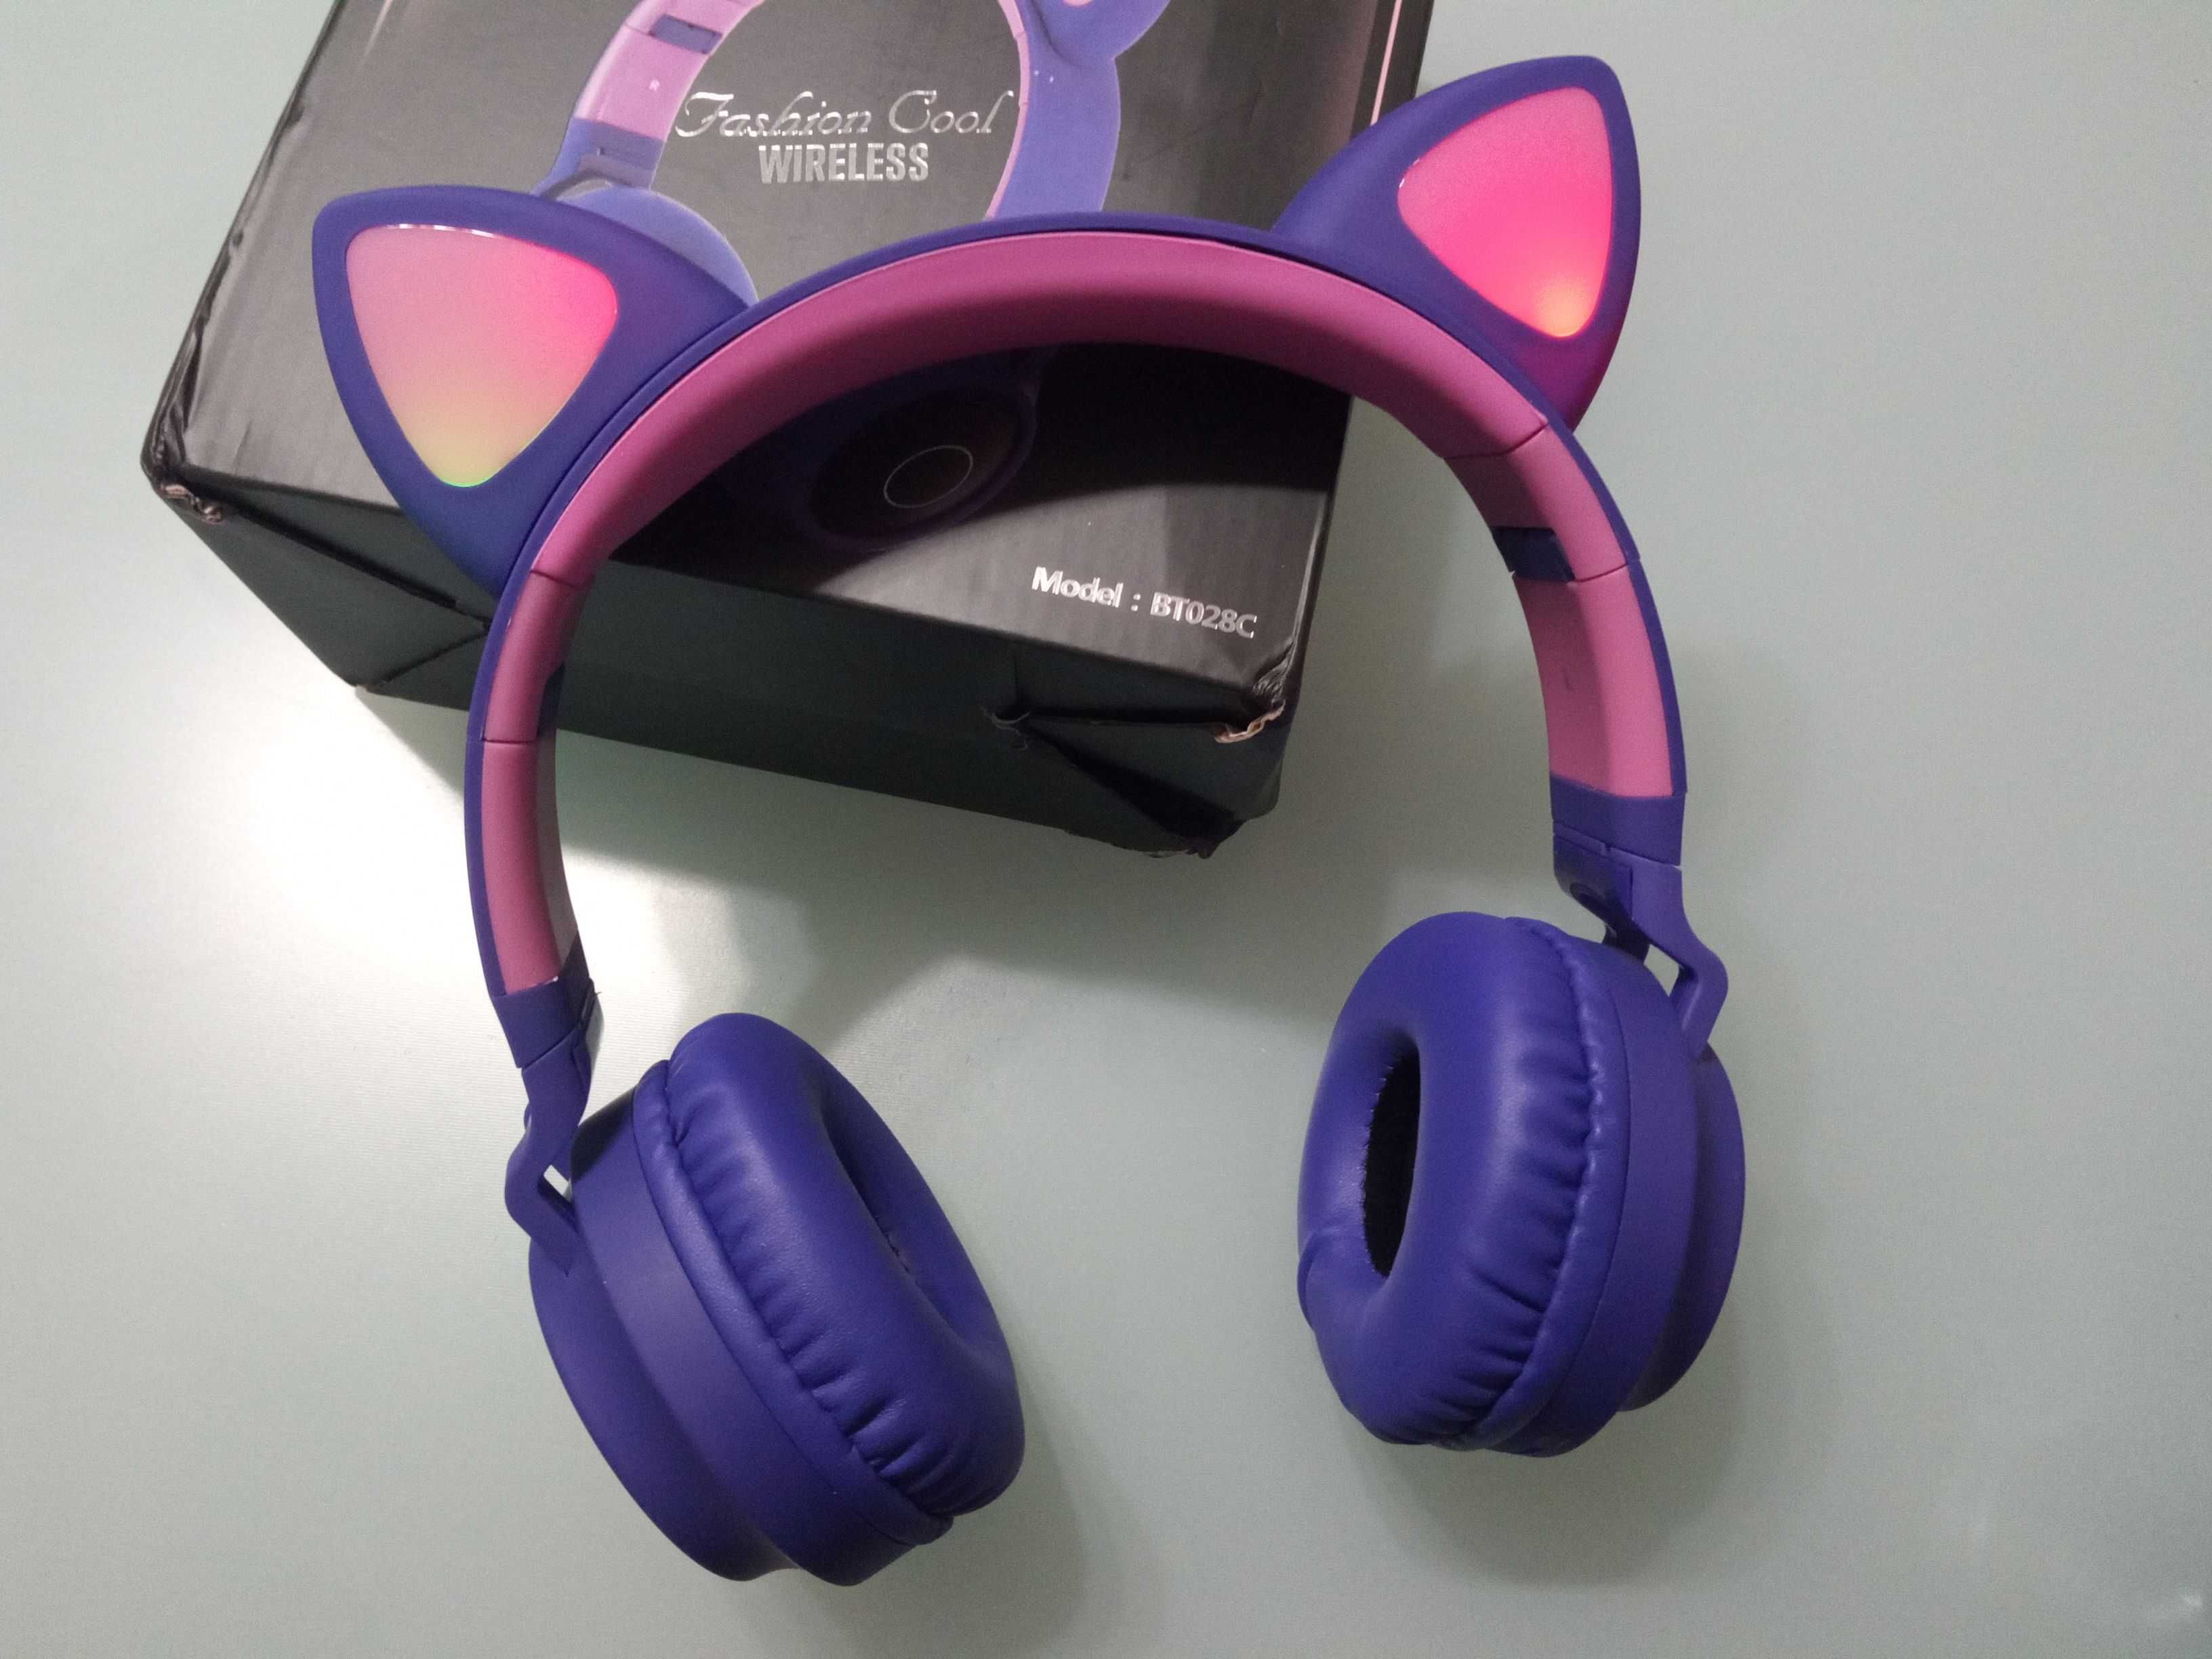 Беспроводные наушники Cat Ear BT028C со светящимися кошачьими ушками